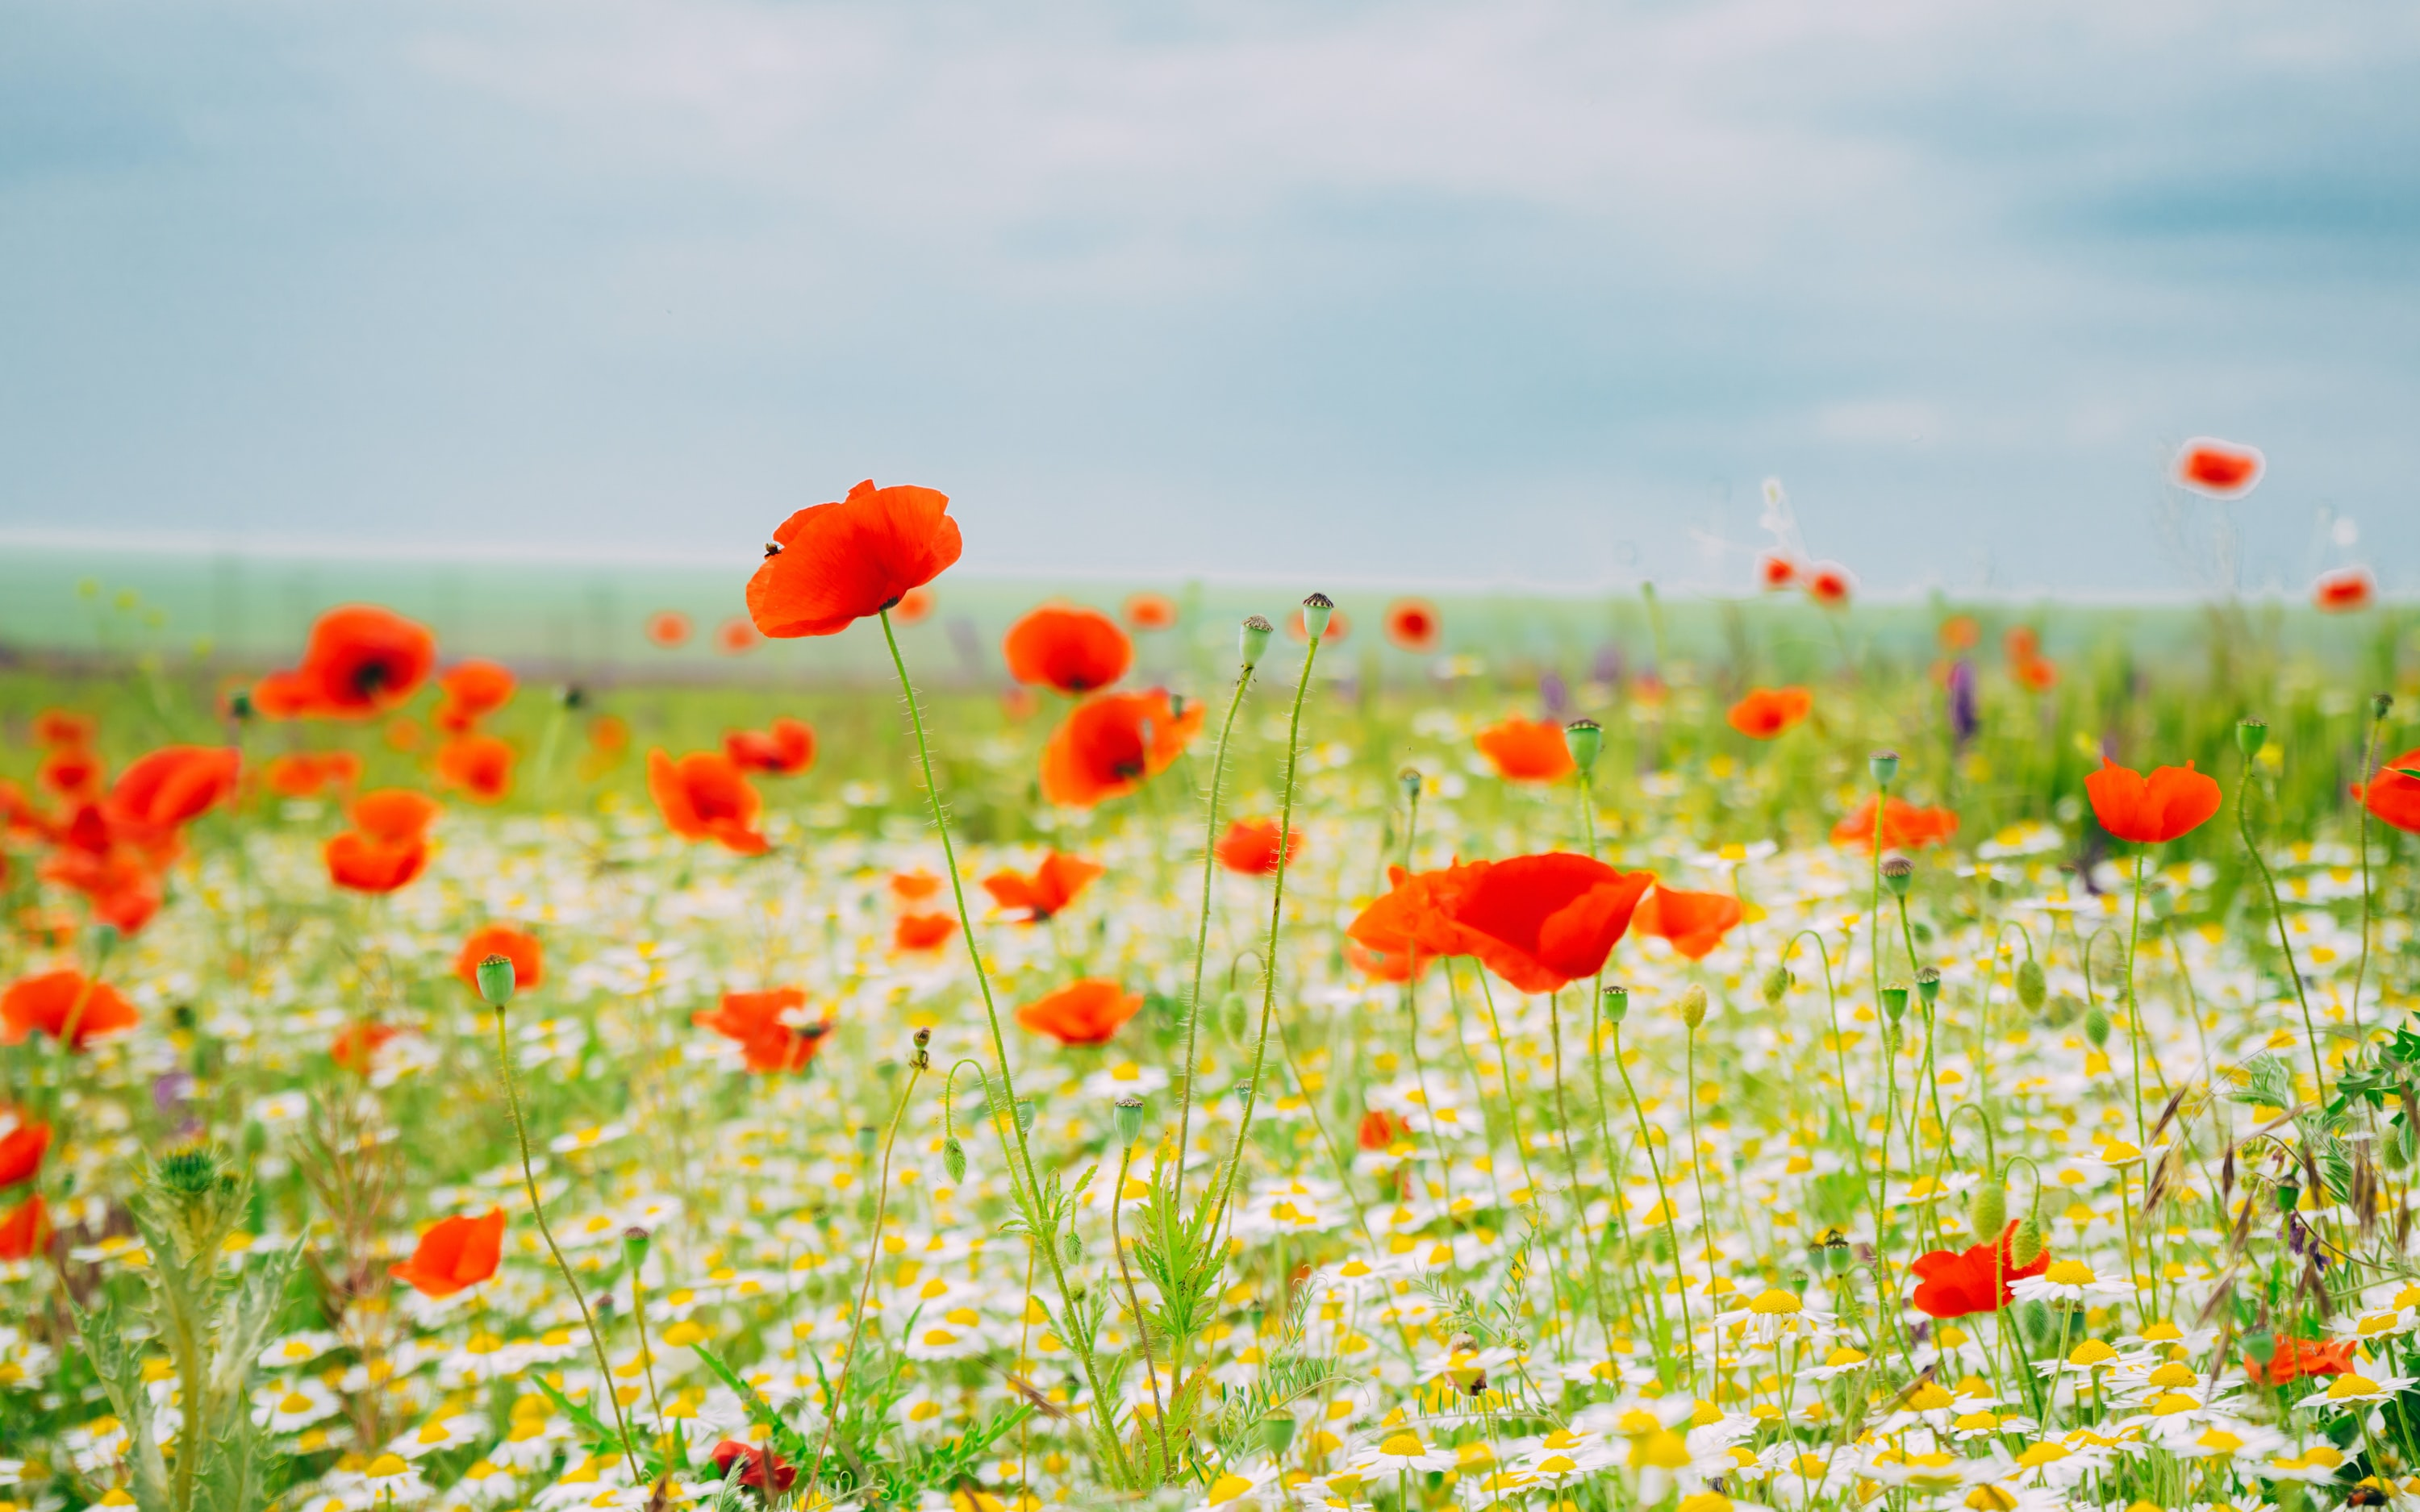 A field of red Poppy flowers.